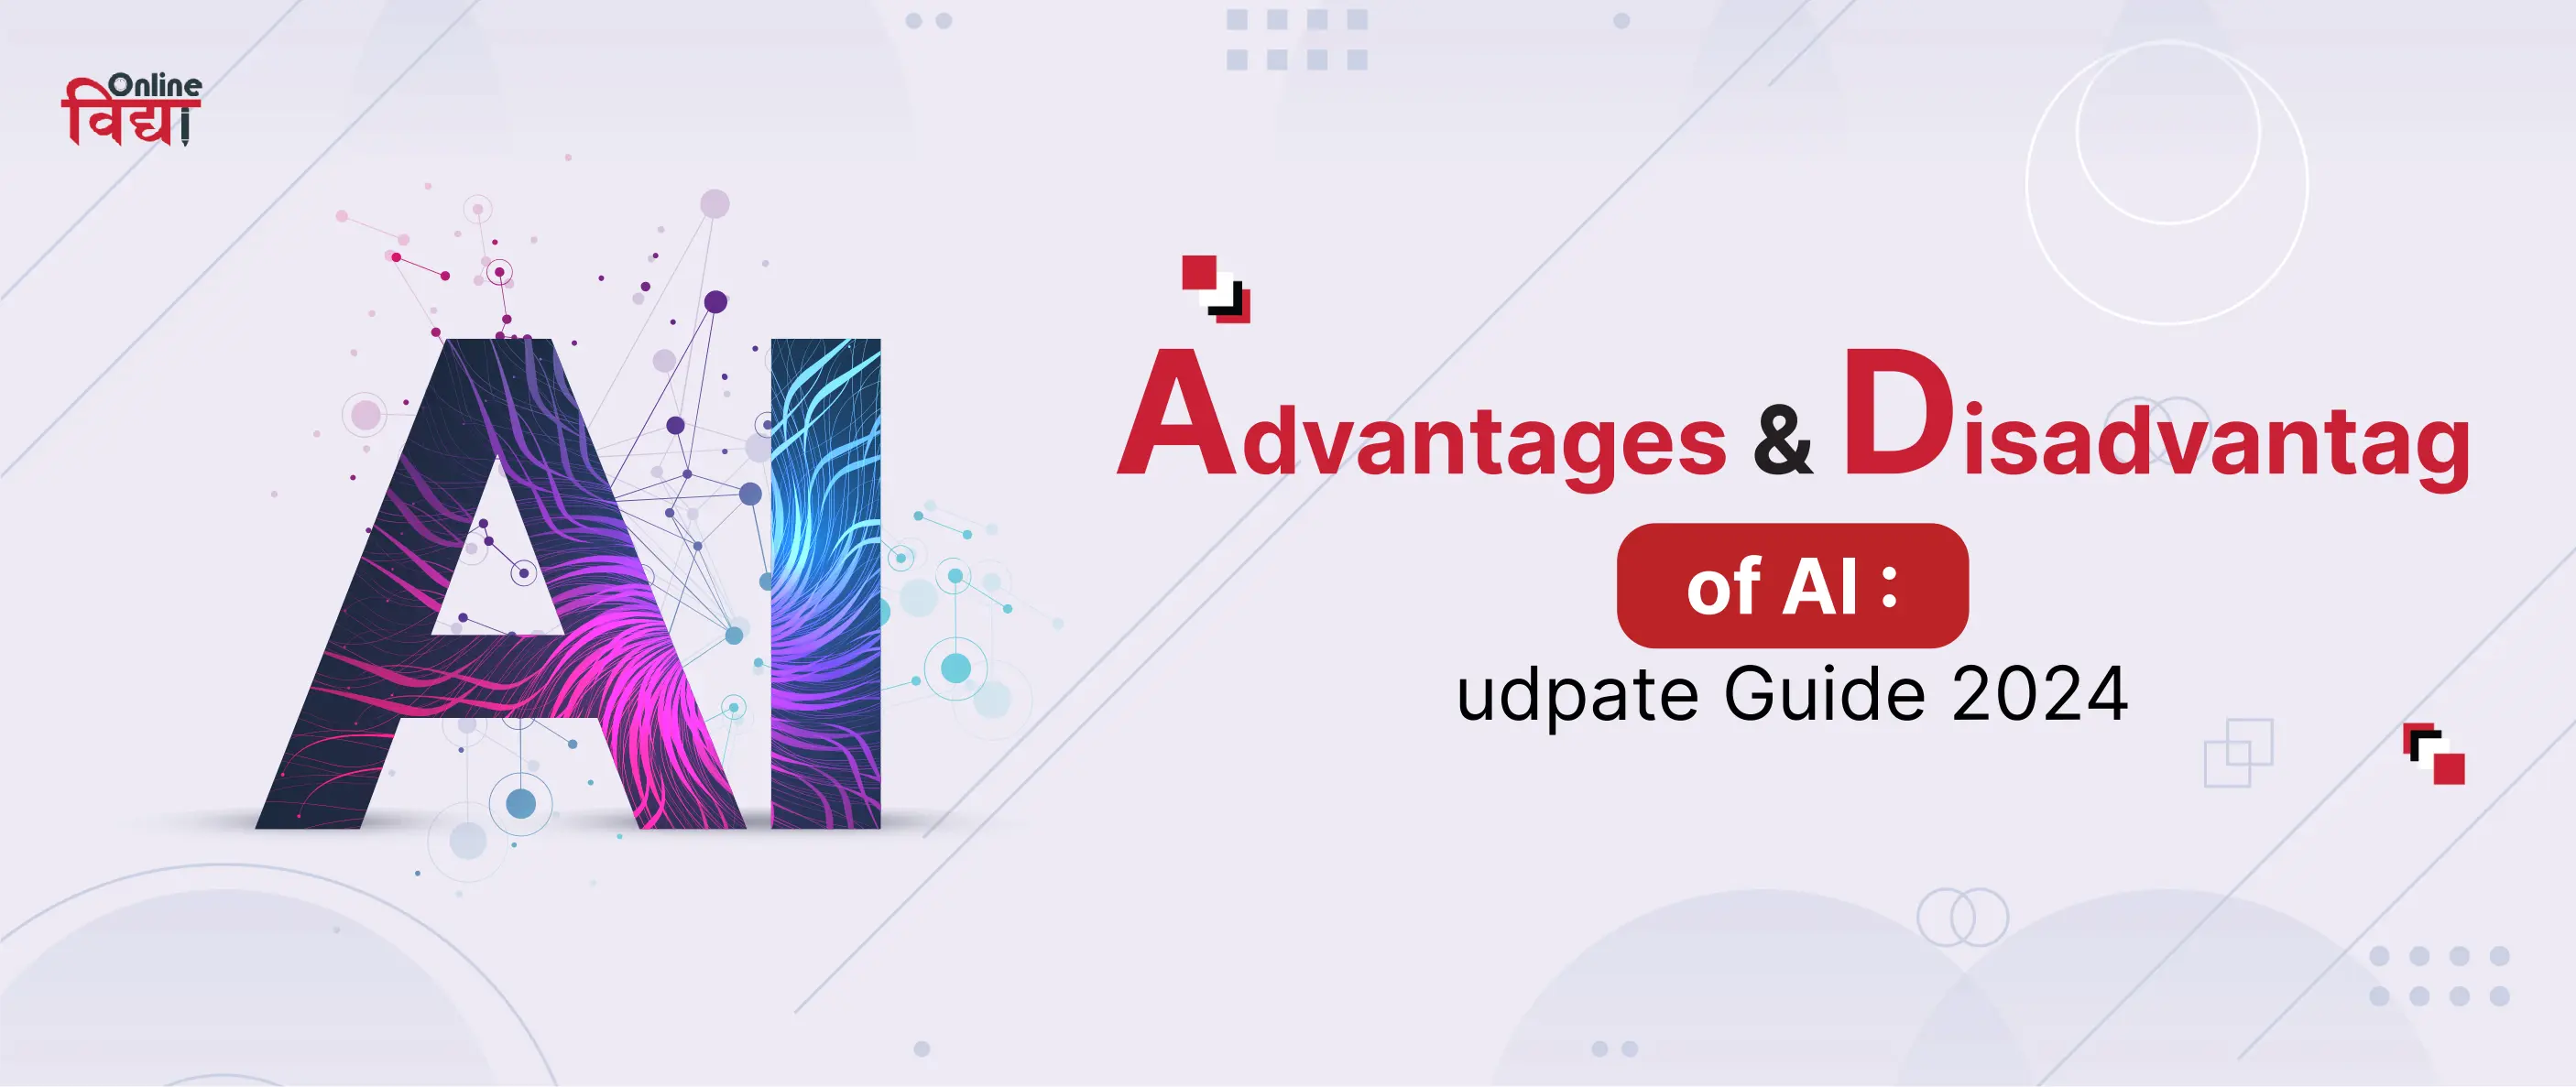 Advantages & Disadvantages of AI: update Guide 2024